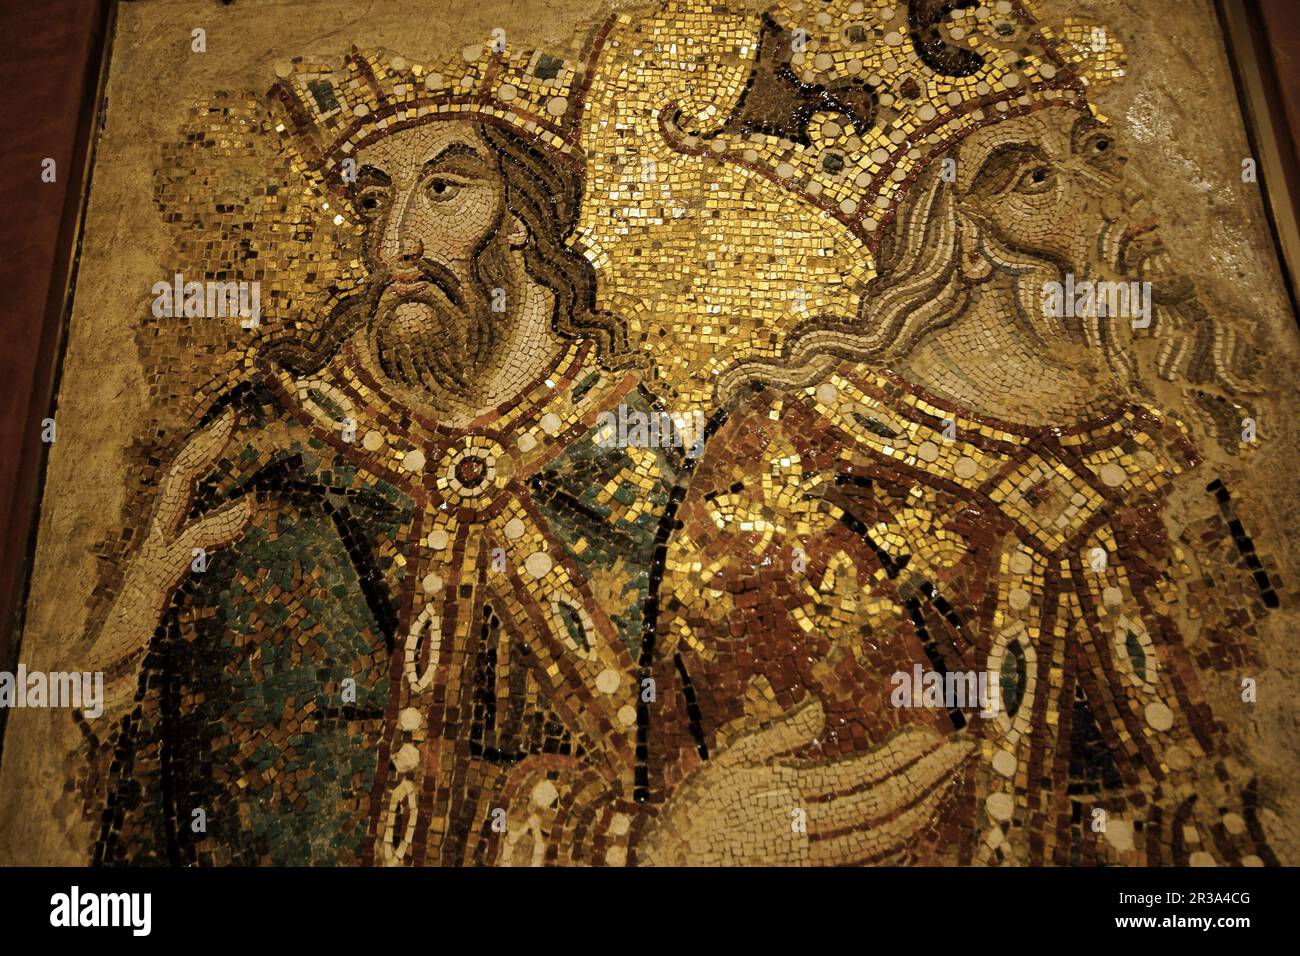 Fragmento de un mosaico(s.XIV).Basilica de San Marcos(s.XI),sestiere de San Marco. Venecia.Véneto. Italia. Stock Photo